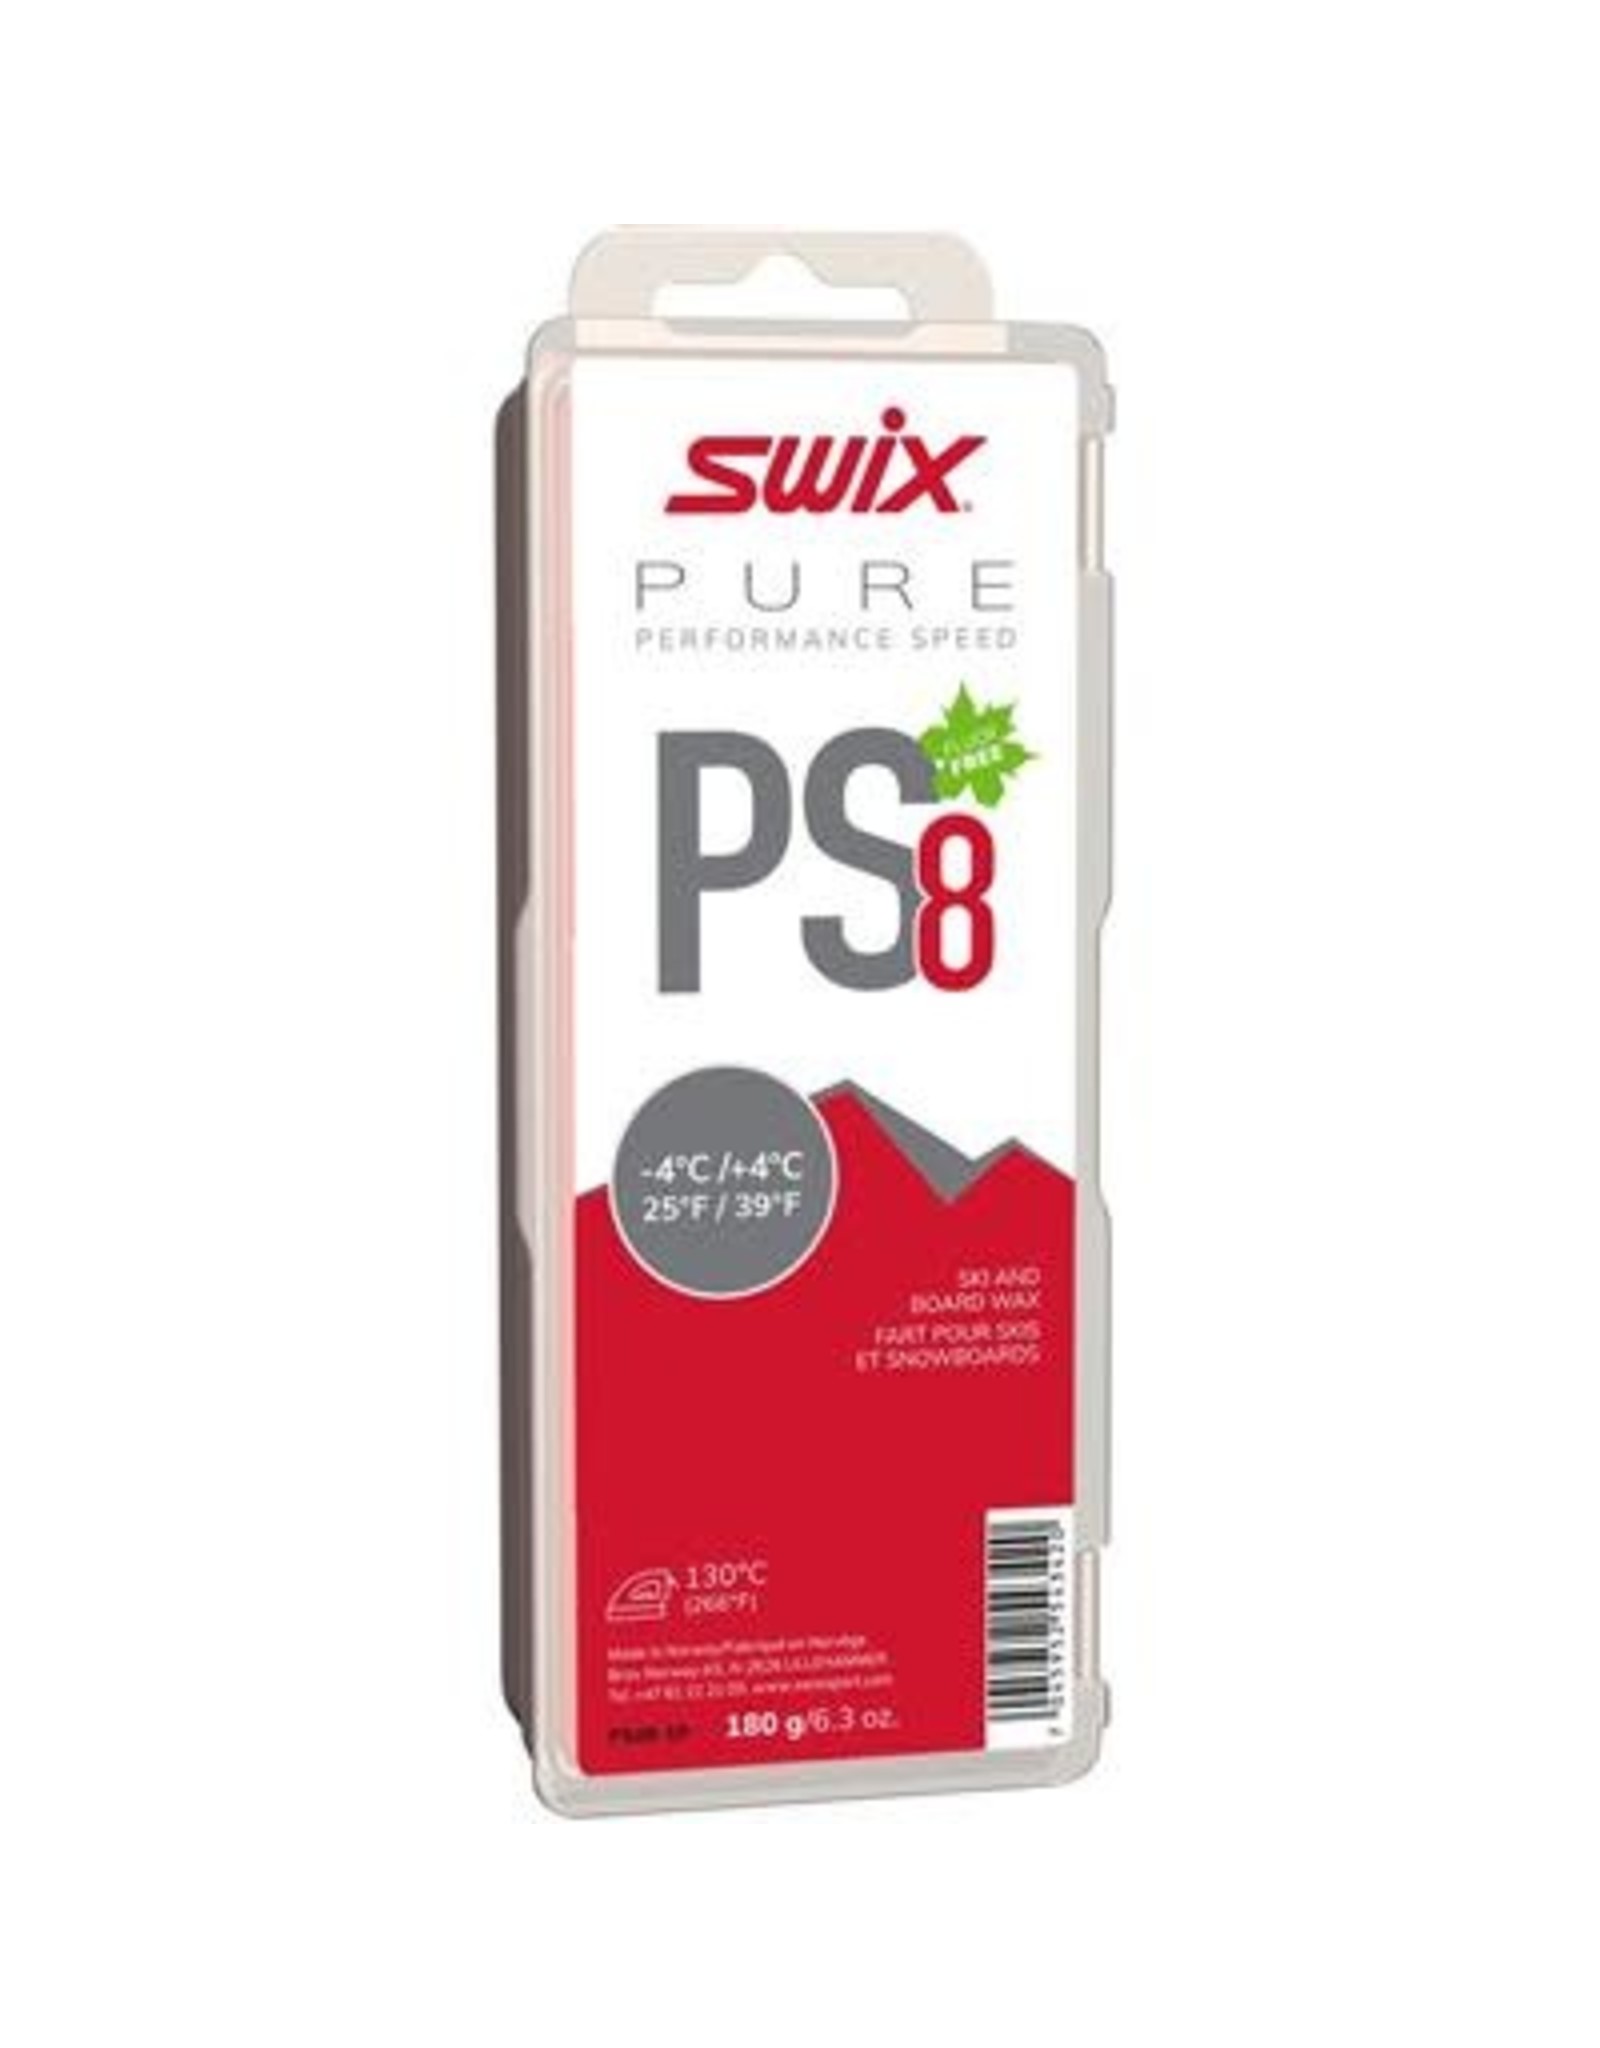 Swix PS8 Red, -4?C/+4?C, 180g